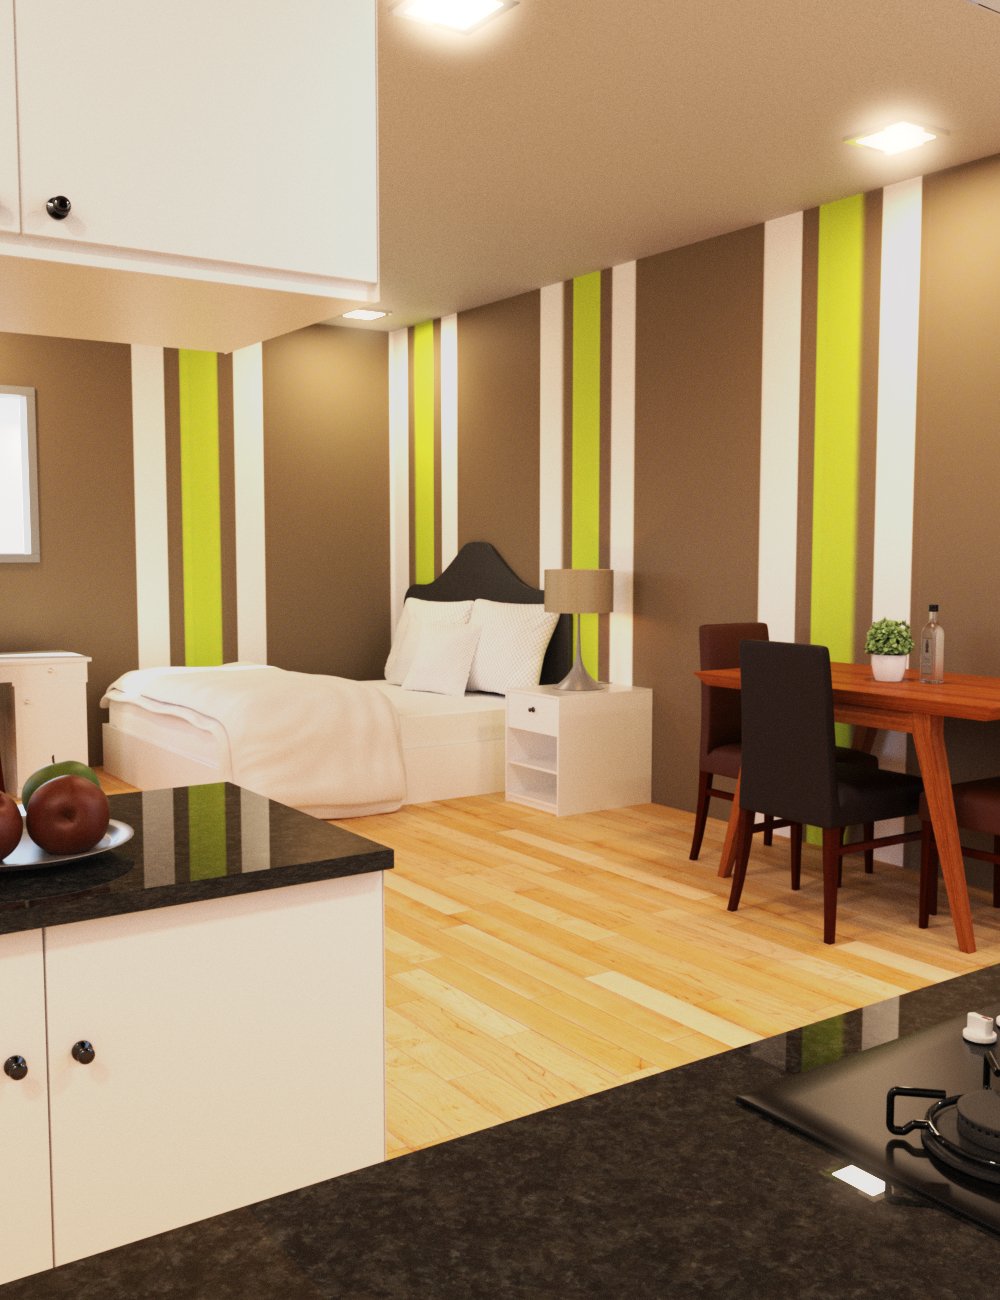 Cozy Studio Apartment by: Tesla3dCorp, 3D Models by Daz 3D